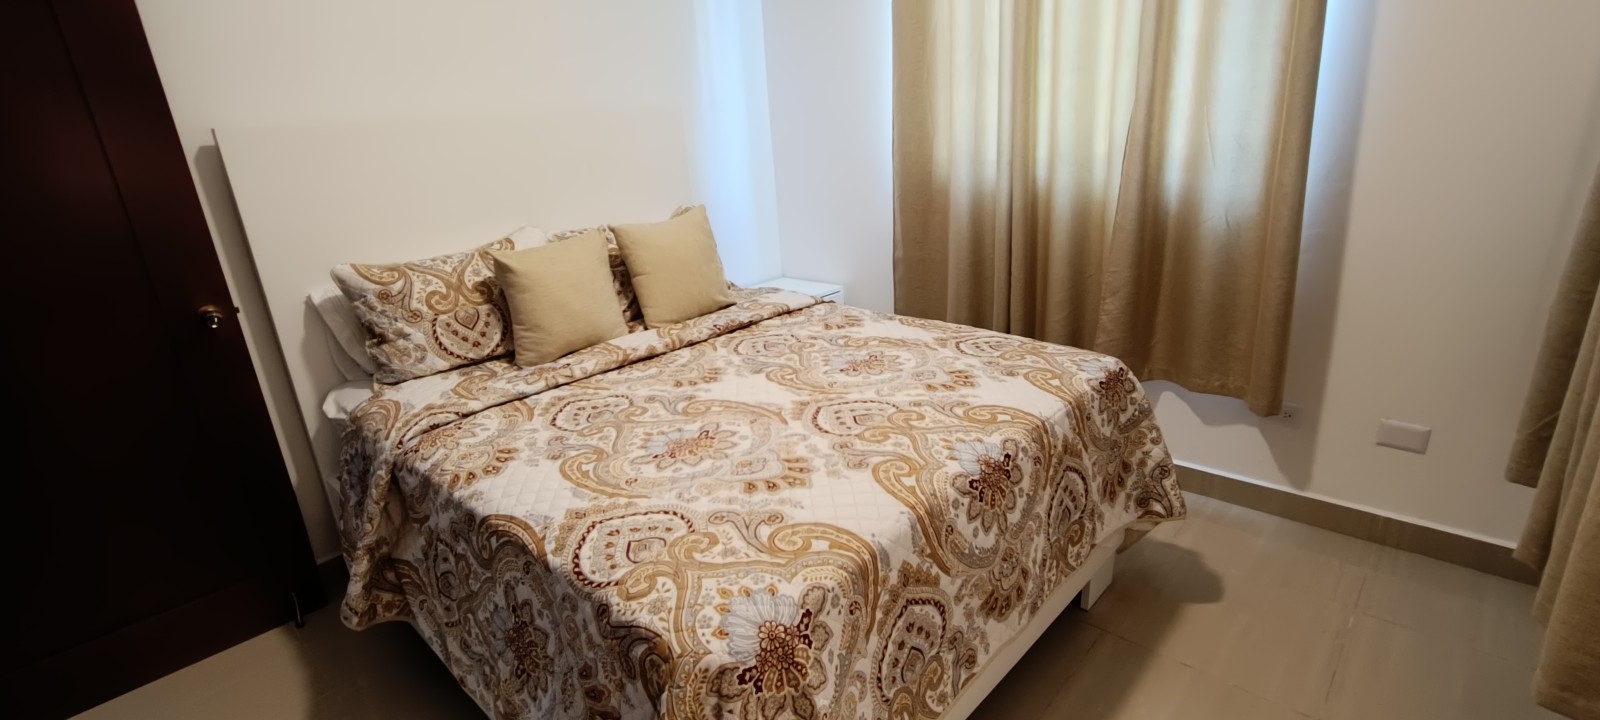 apartamentos - Vendo 4to piso Amueblado para inversión airbnb en el despertar 2